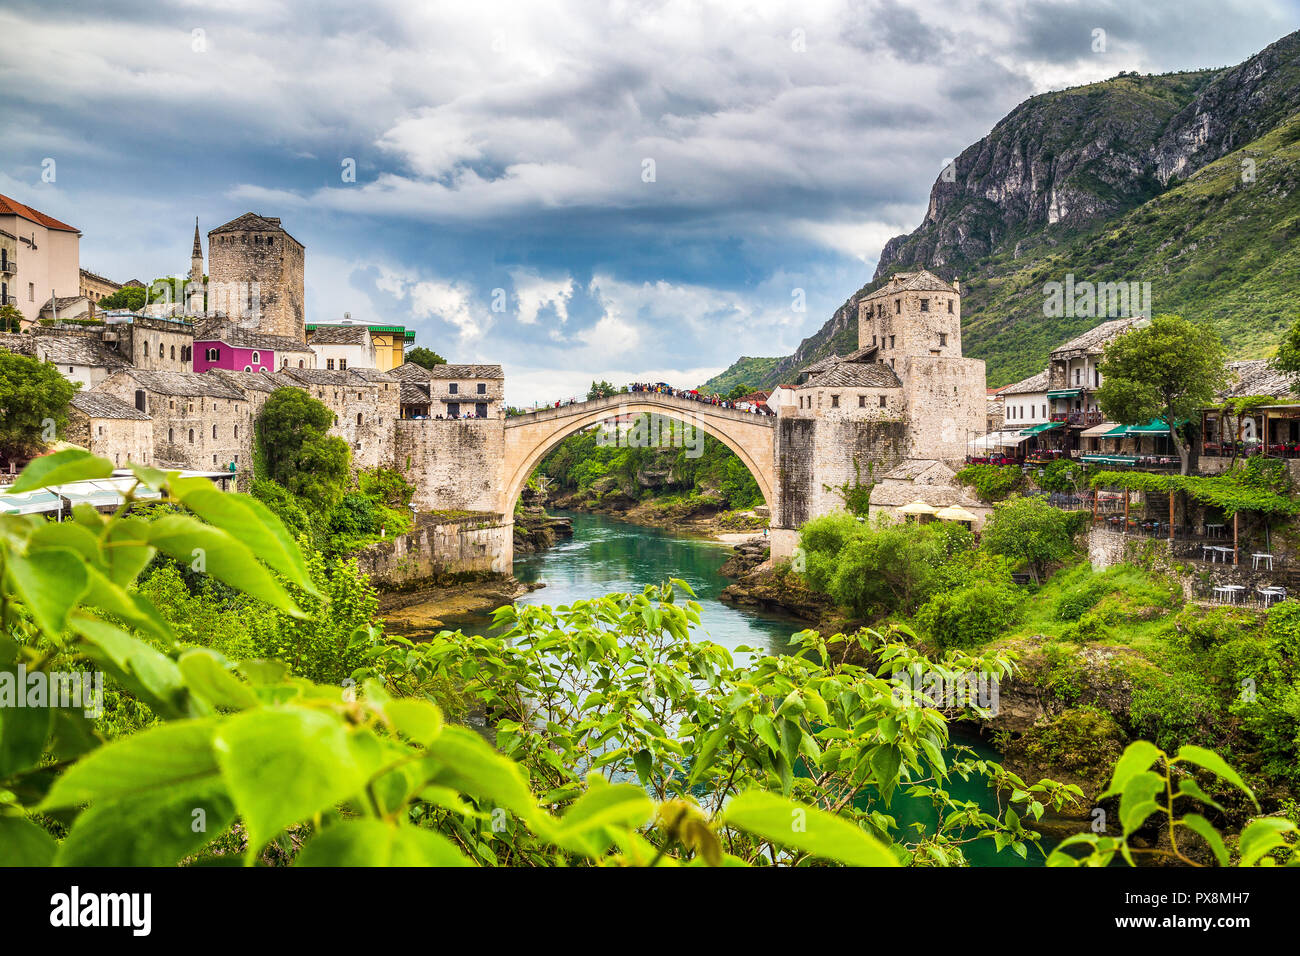 Vista panoramica del centro storico di Mostar con il famoso Ponte Vecchio (Stari Most), un sito Patrimonio Mondiale dell'UNESCO dal 2005, in un giorno di pioggia con scuri c Foto Stock